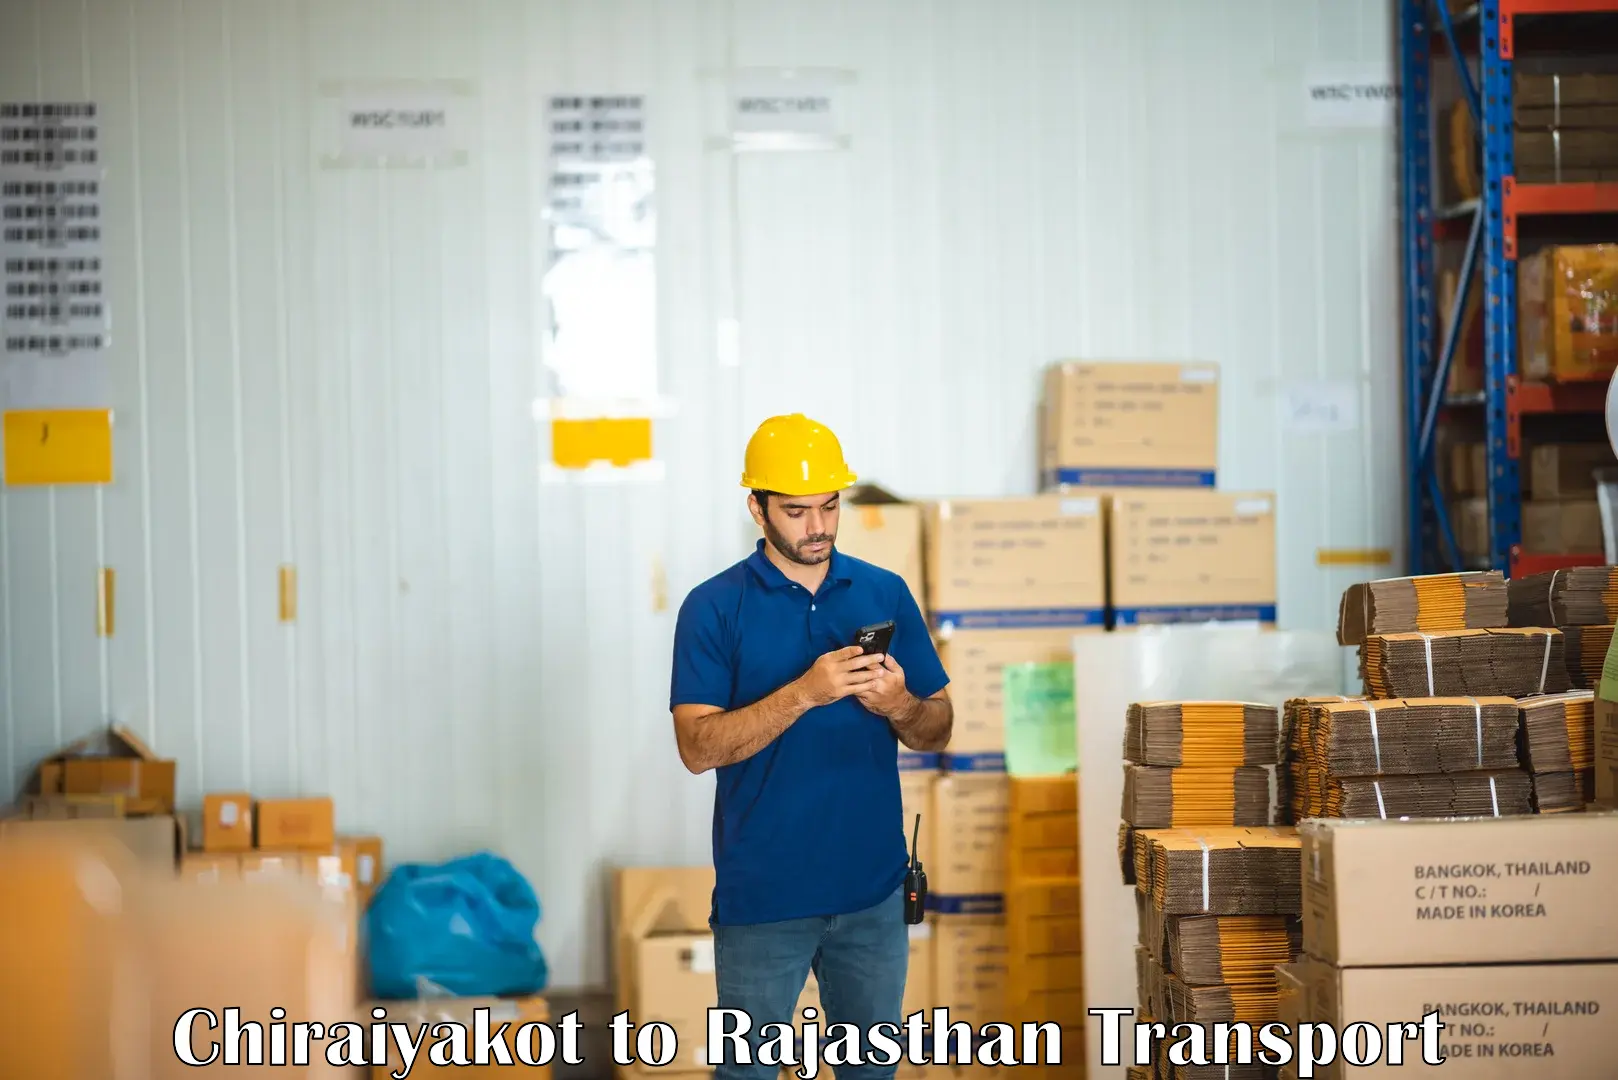 Vehicle transport services Chiraiyakot to Rajasthan